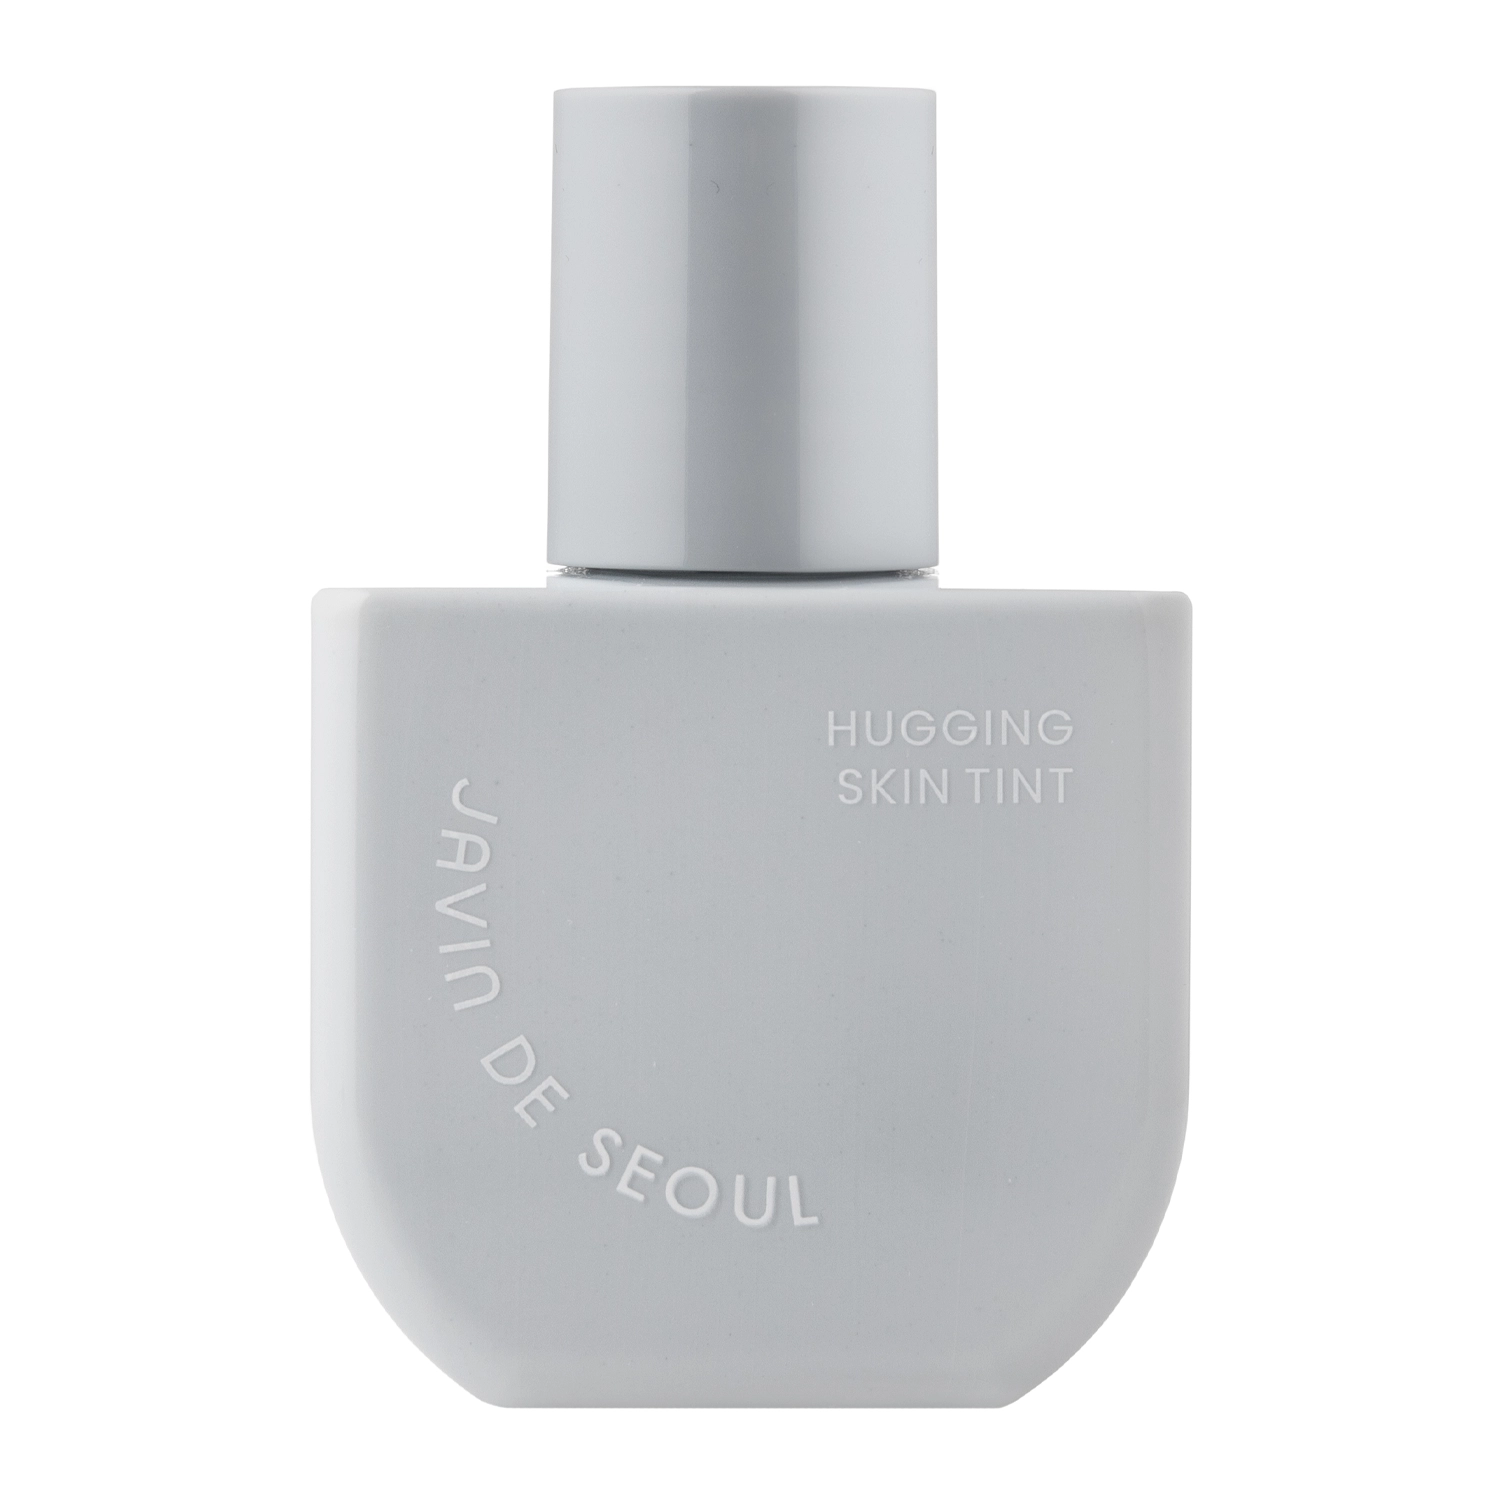 Javin De Seoul - Hugging Skin Tint  - Hydratační pleťový tint - 01 Airy Bloom - 55 g